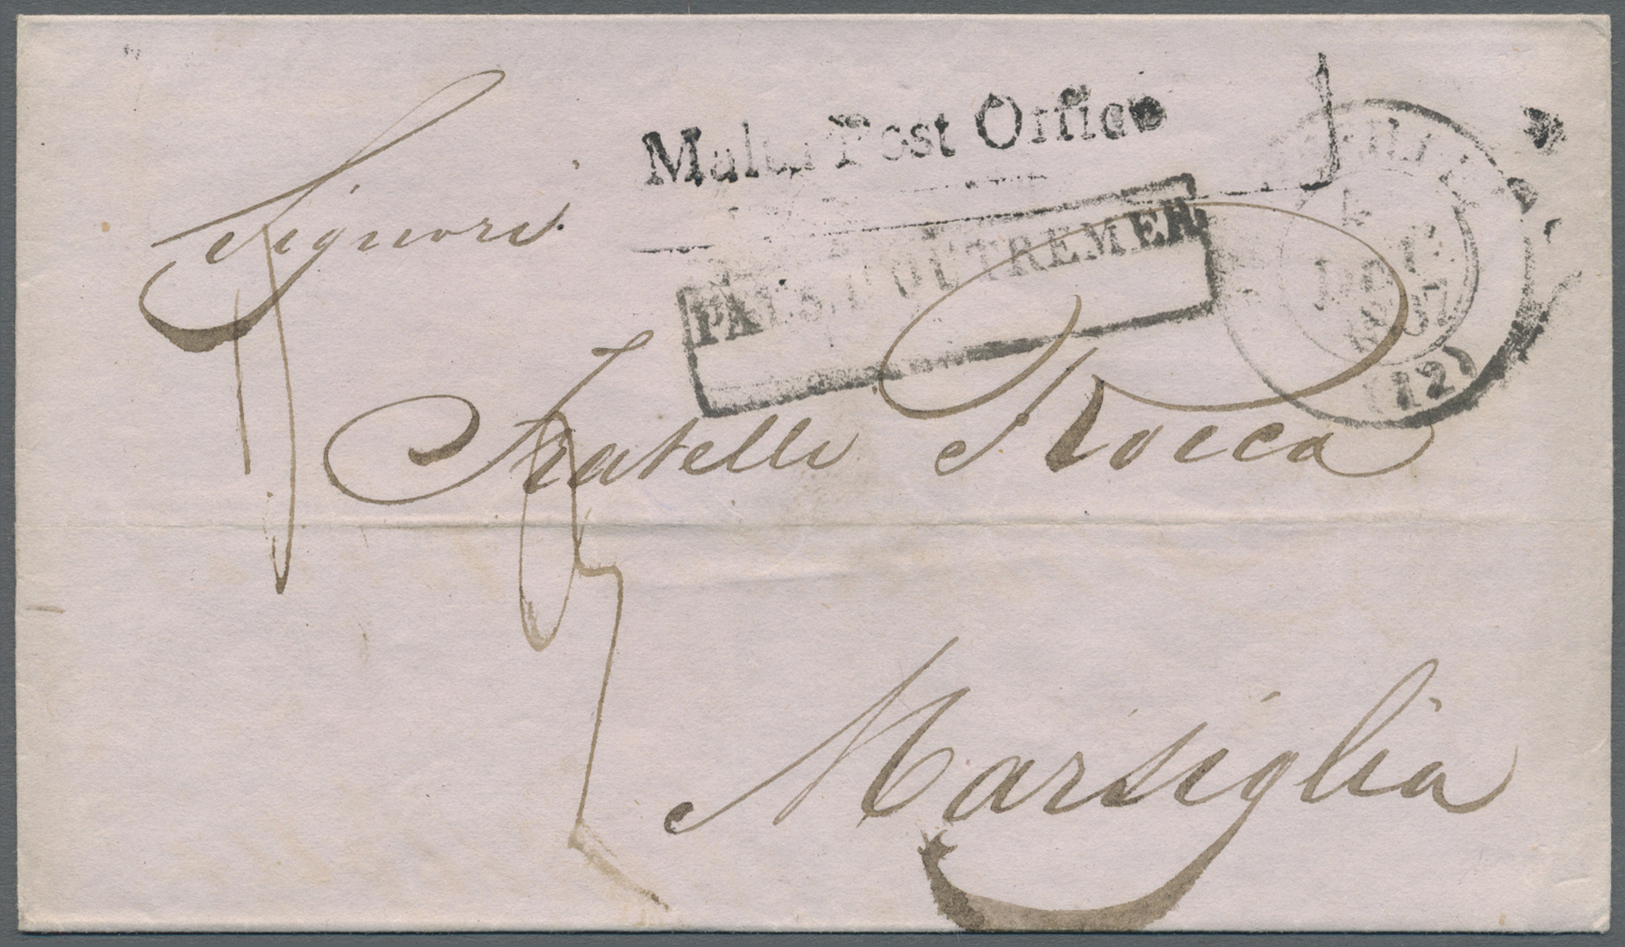 Br Malta - Vorphilatelie: 1837, "Malta Post Office" (Type 1b), Brief (waagerechter Mittelbug) Nach Marseille, Lau - Malta